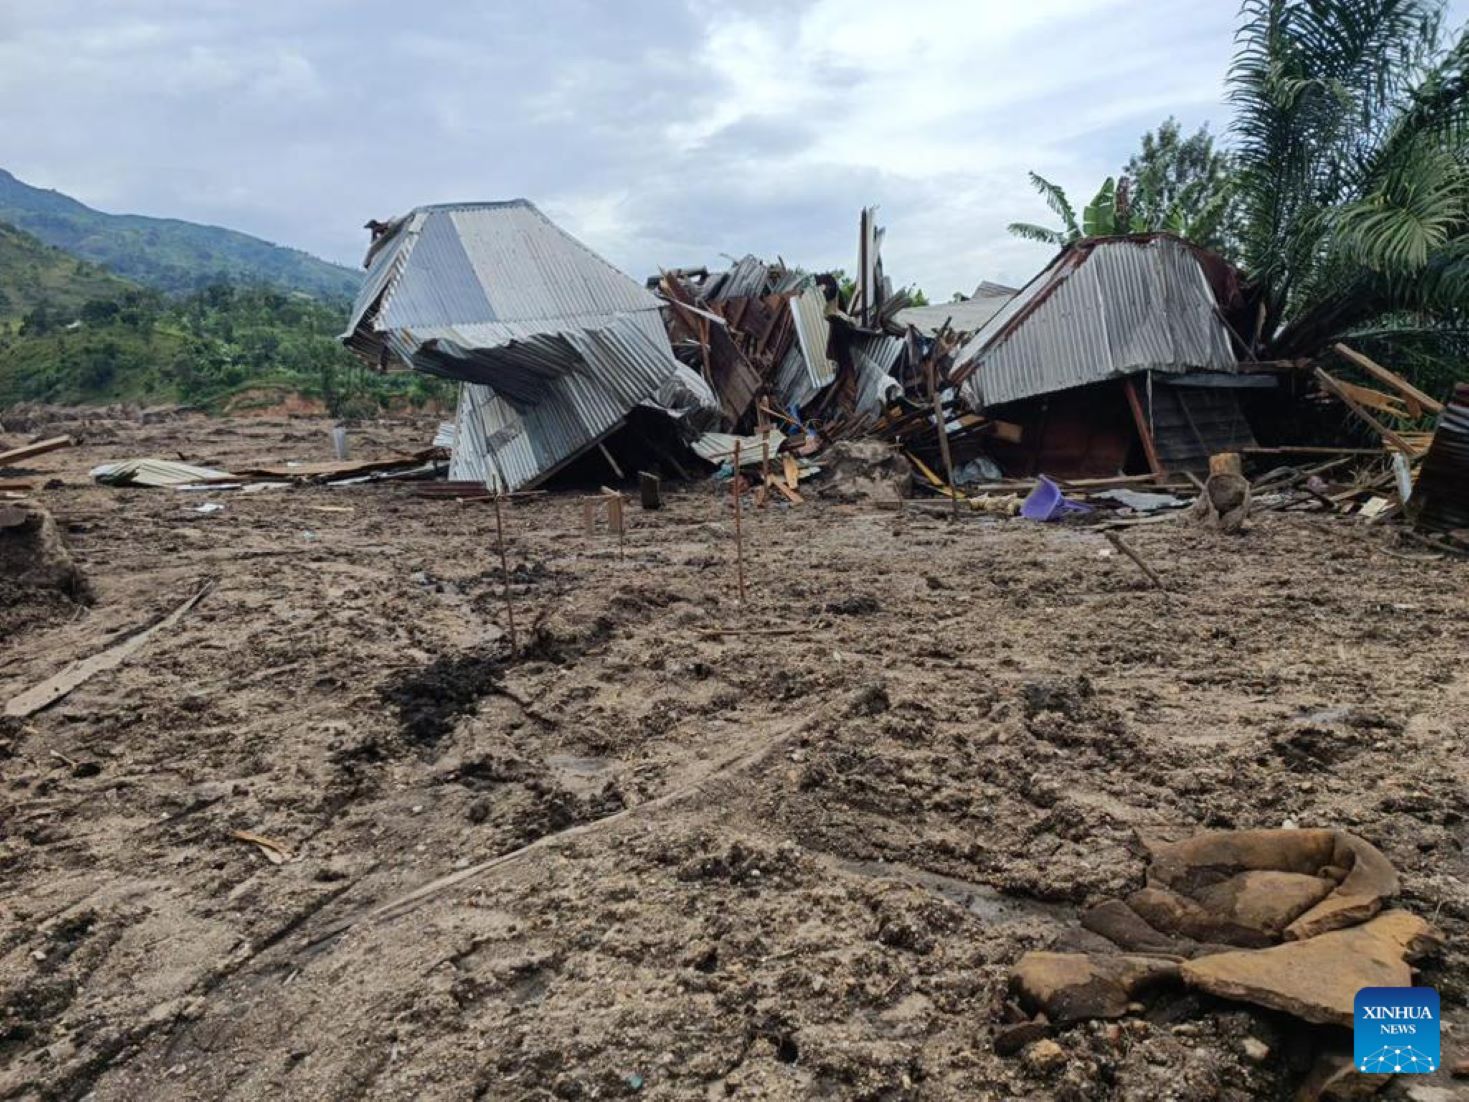 Flooding, Landslides Killed 438 Villagers In Eastern DR Congo